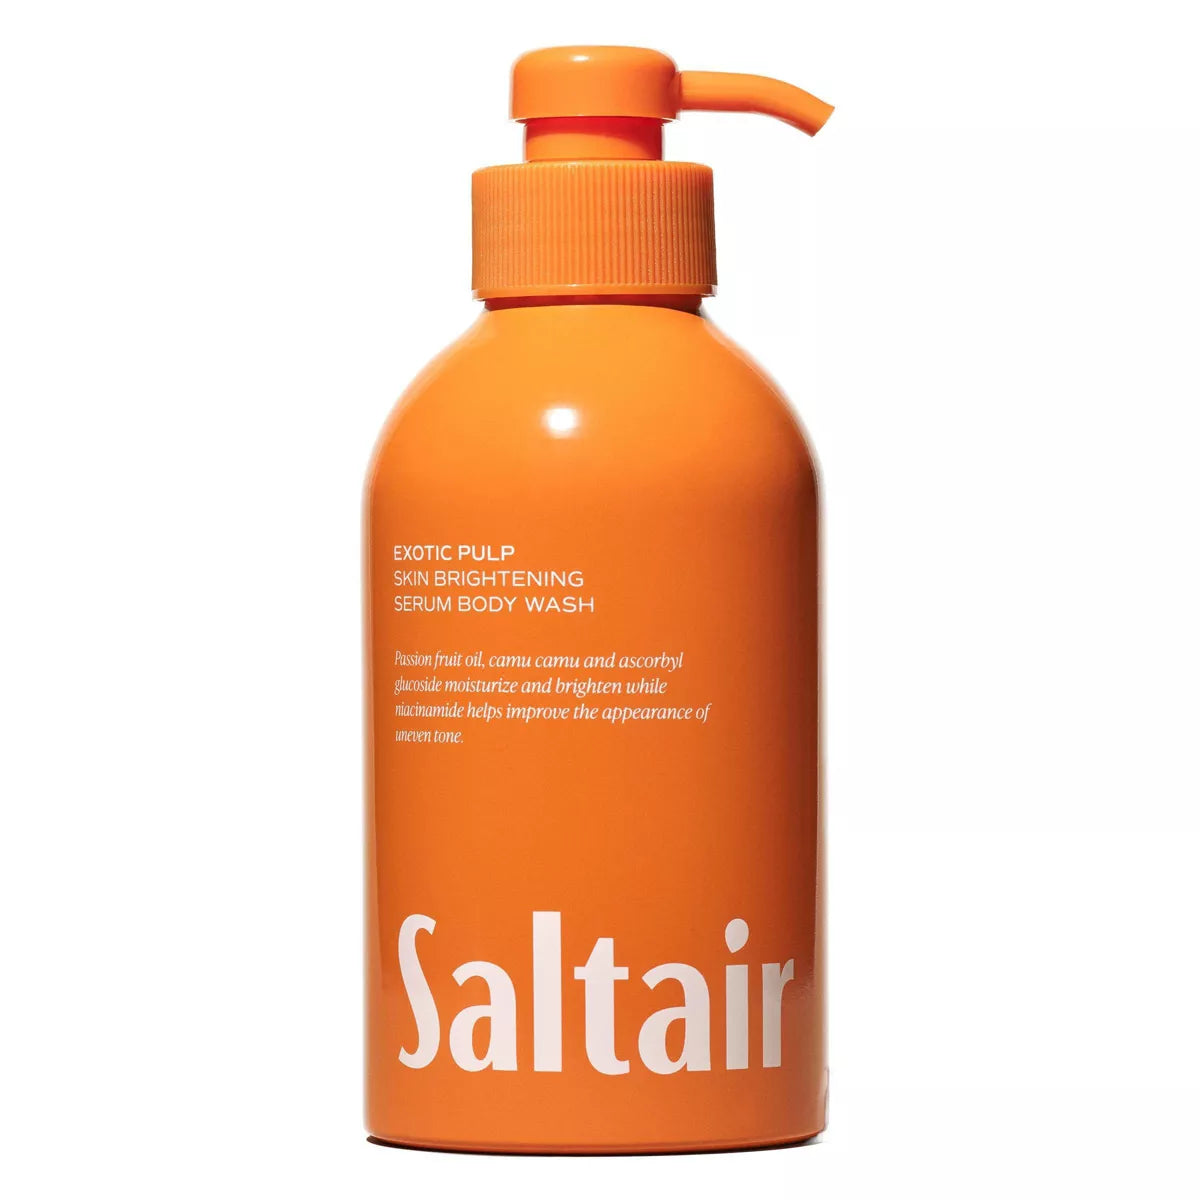 Saltair Exotic Pulp Serum Body Wash - Citrus Scent - (17 fl oz)